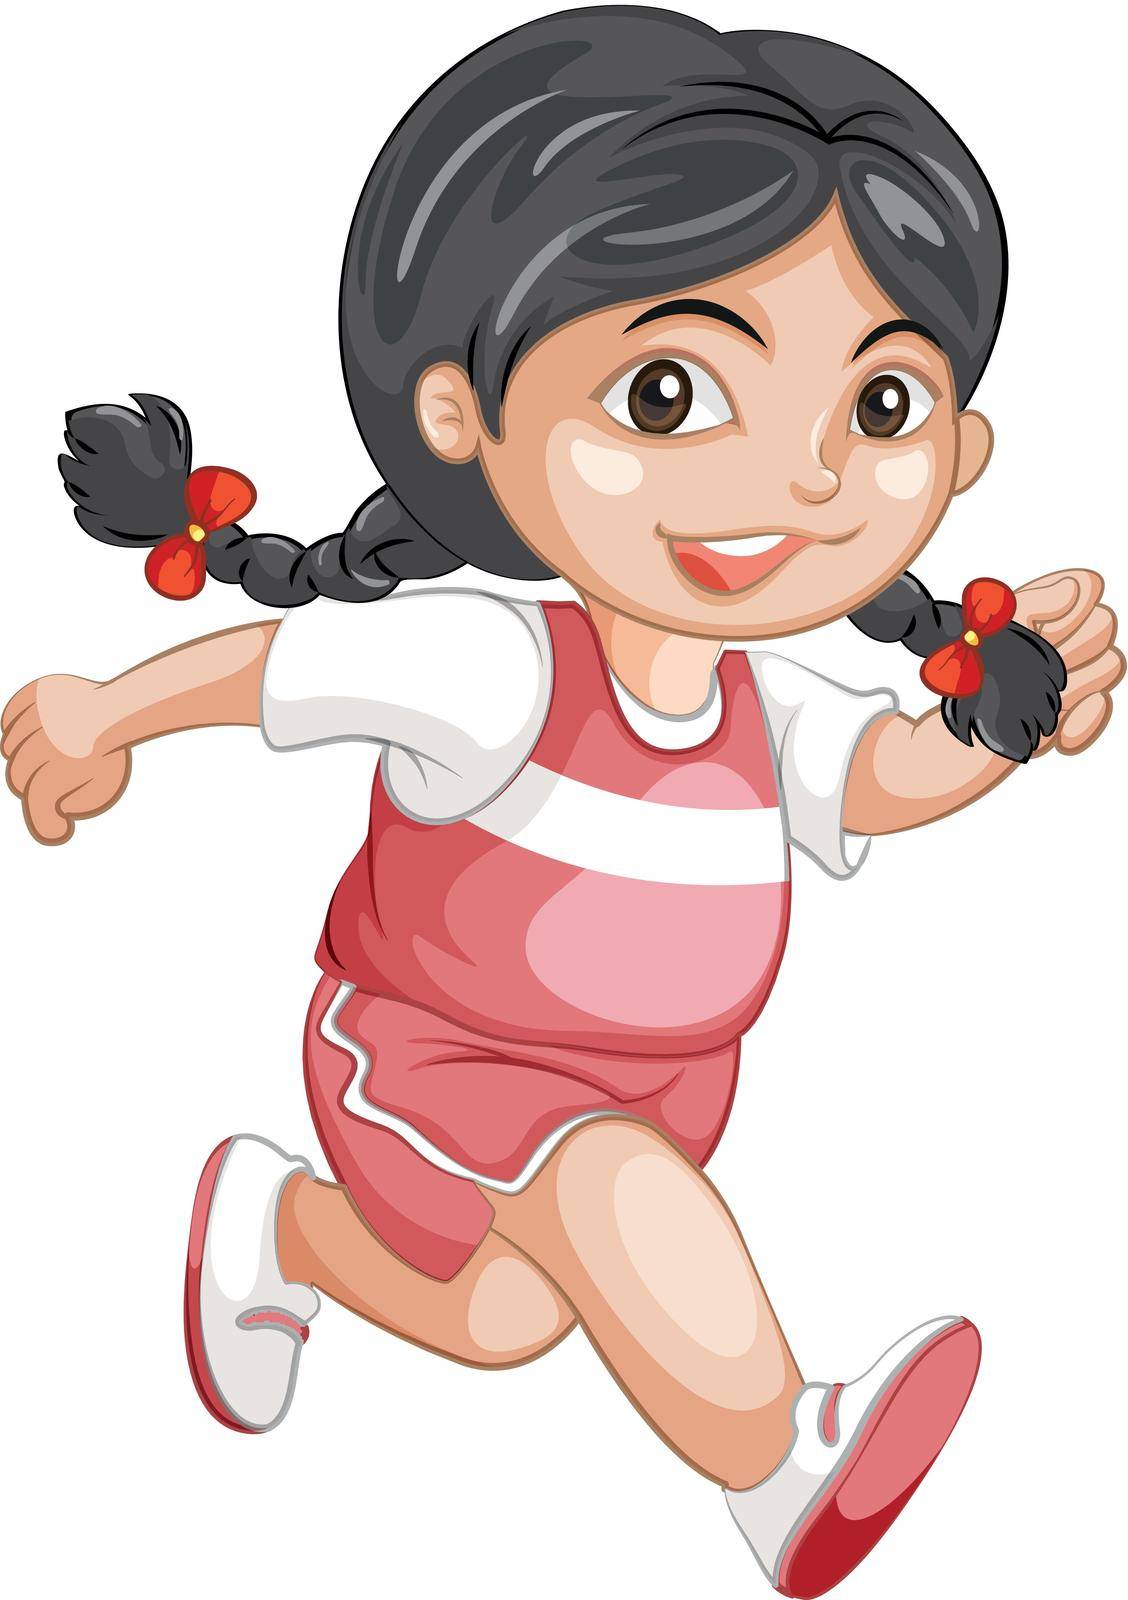 Girl girl running on white illustration